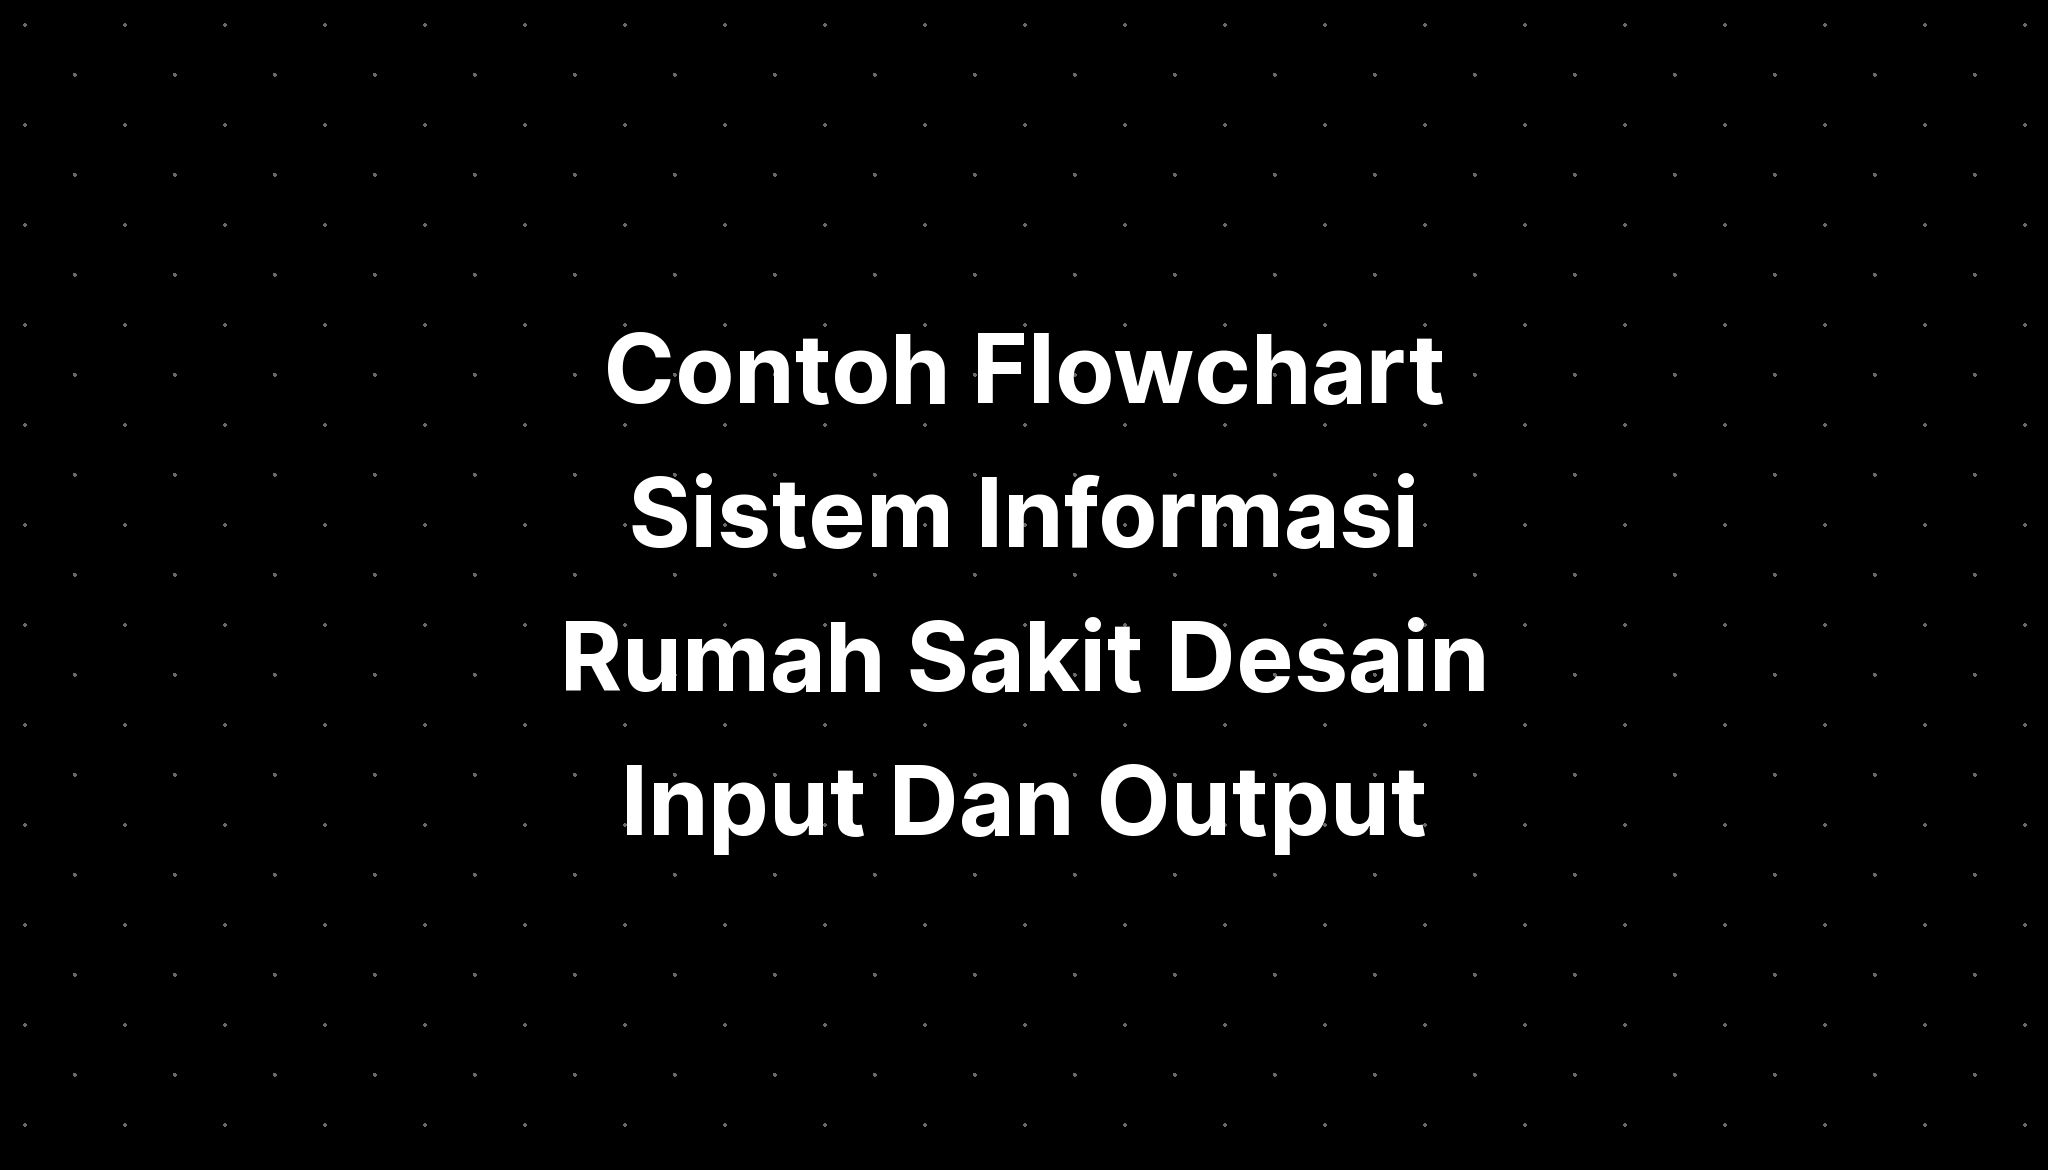 Contoh Flowchart Sistem Informasi Rumah Sakit Desain Input Dan Output ...